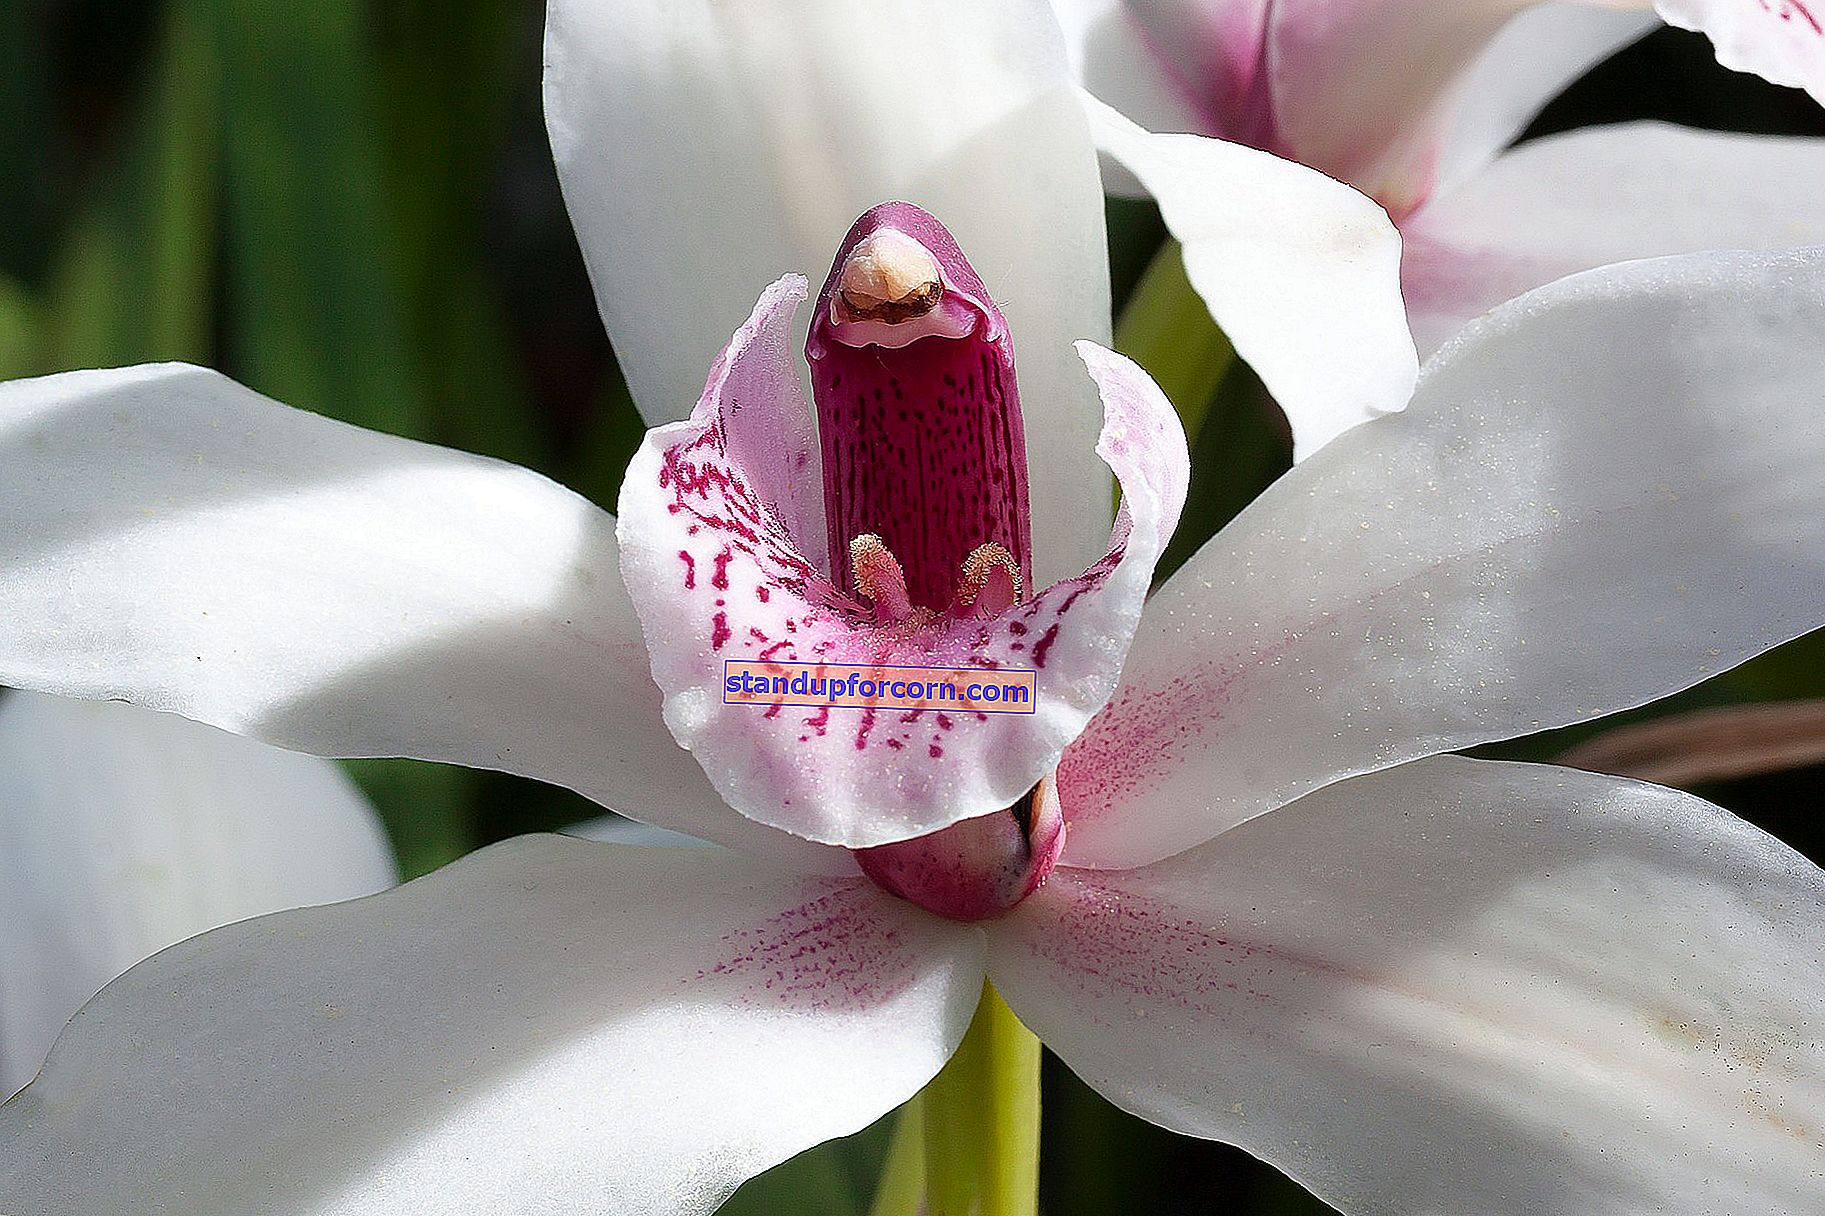 Hvordan plejer man orkideer i en gryde?